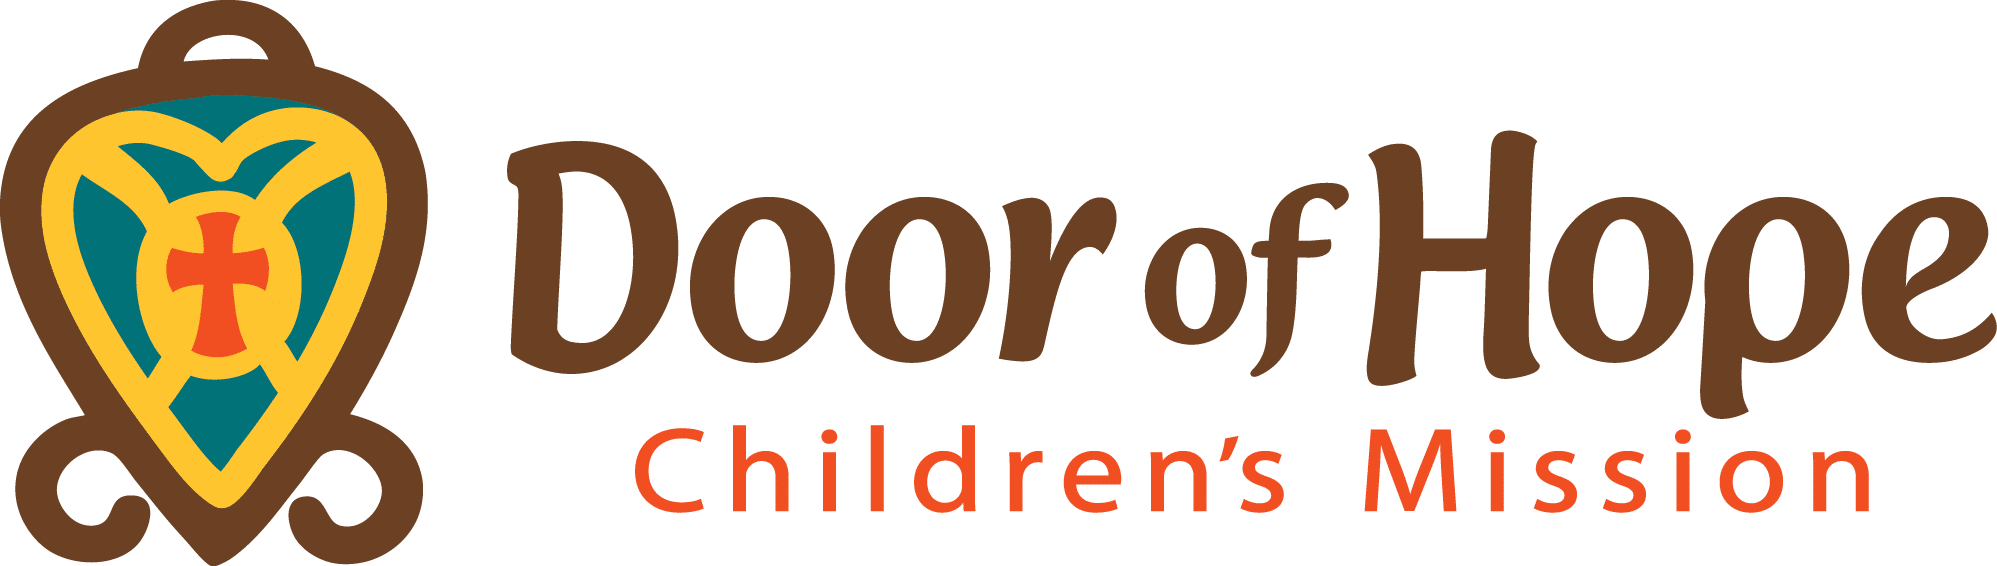 Door of Hope Children’s Mission